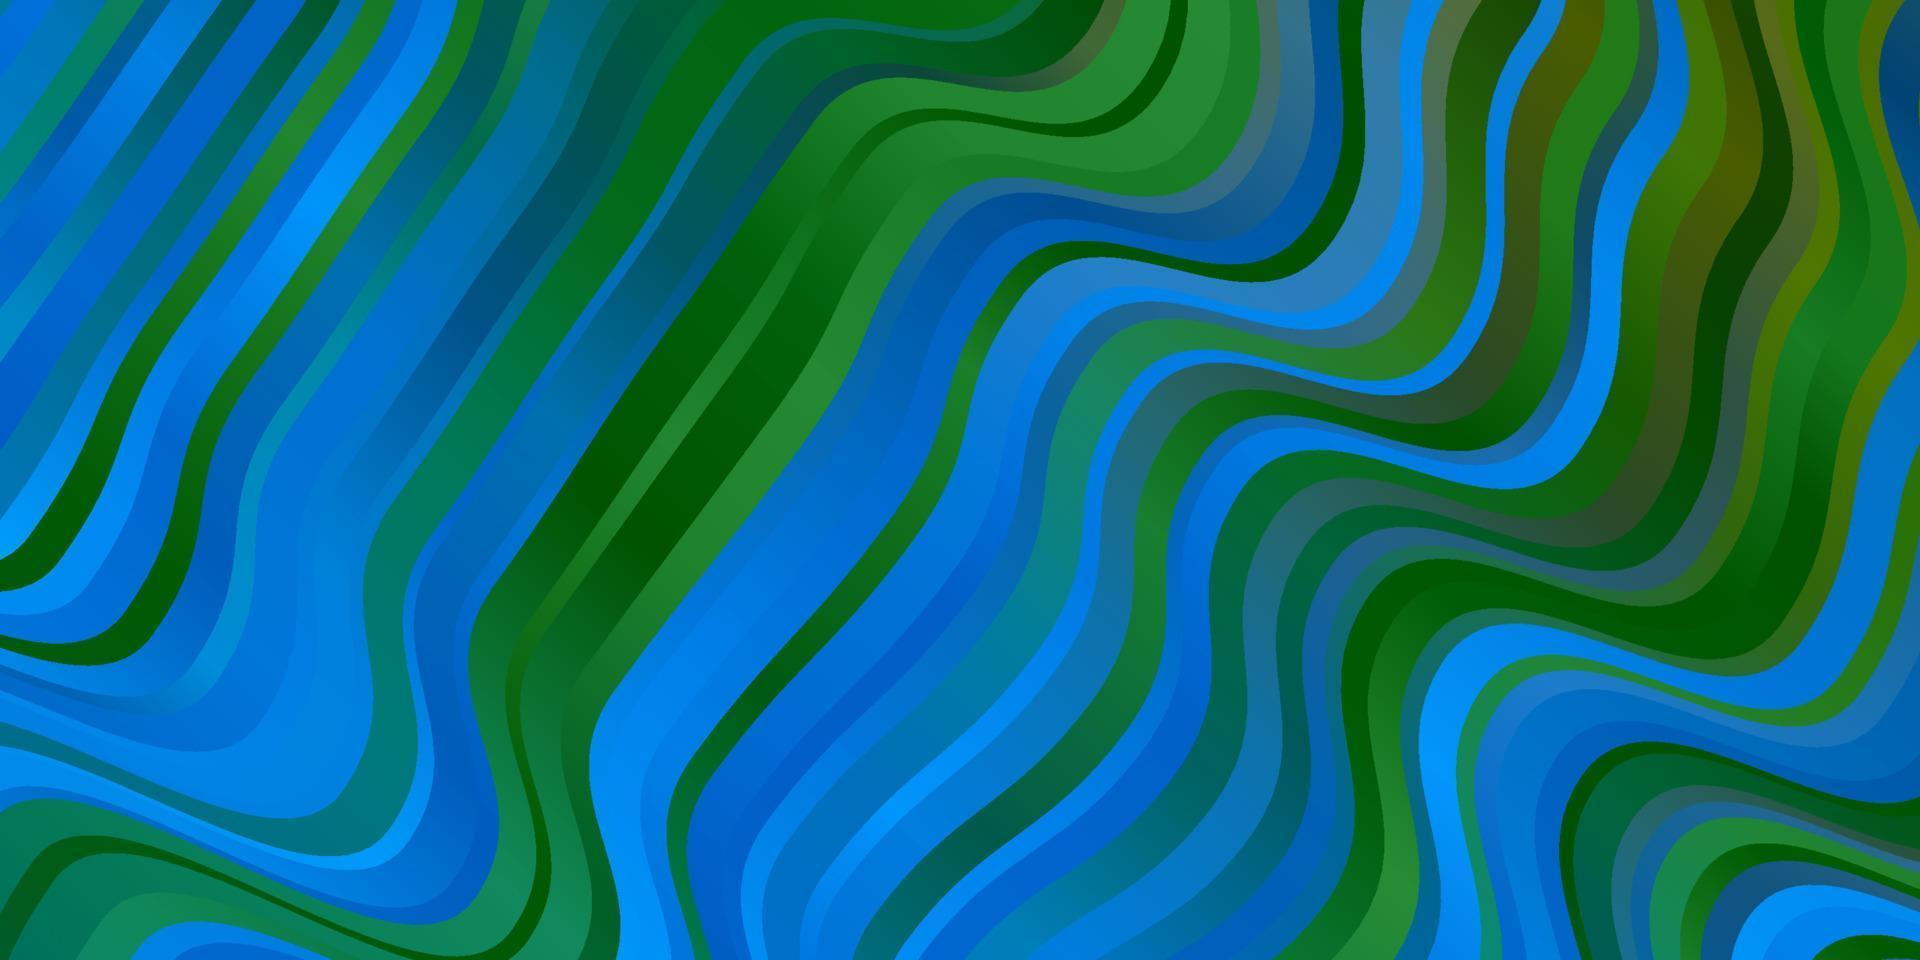 ljusblå, grön vektorbakgrund med linjer. vektor